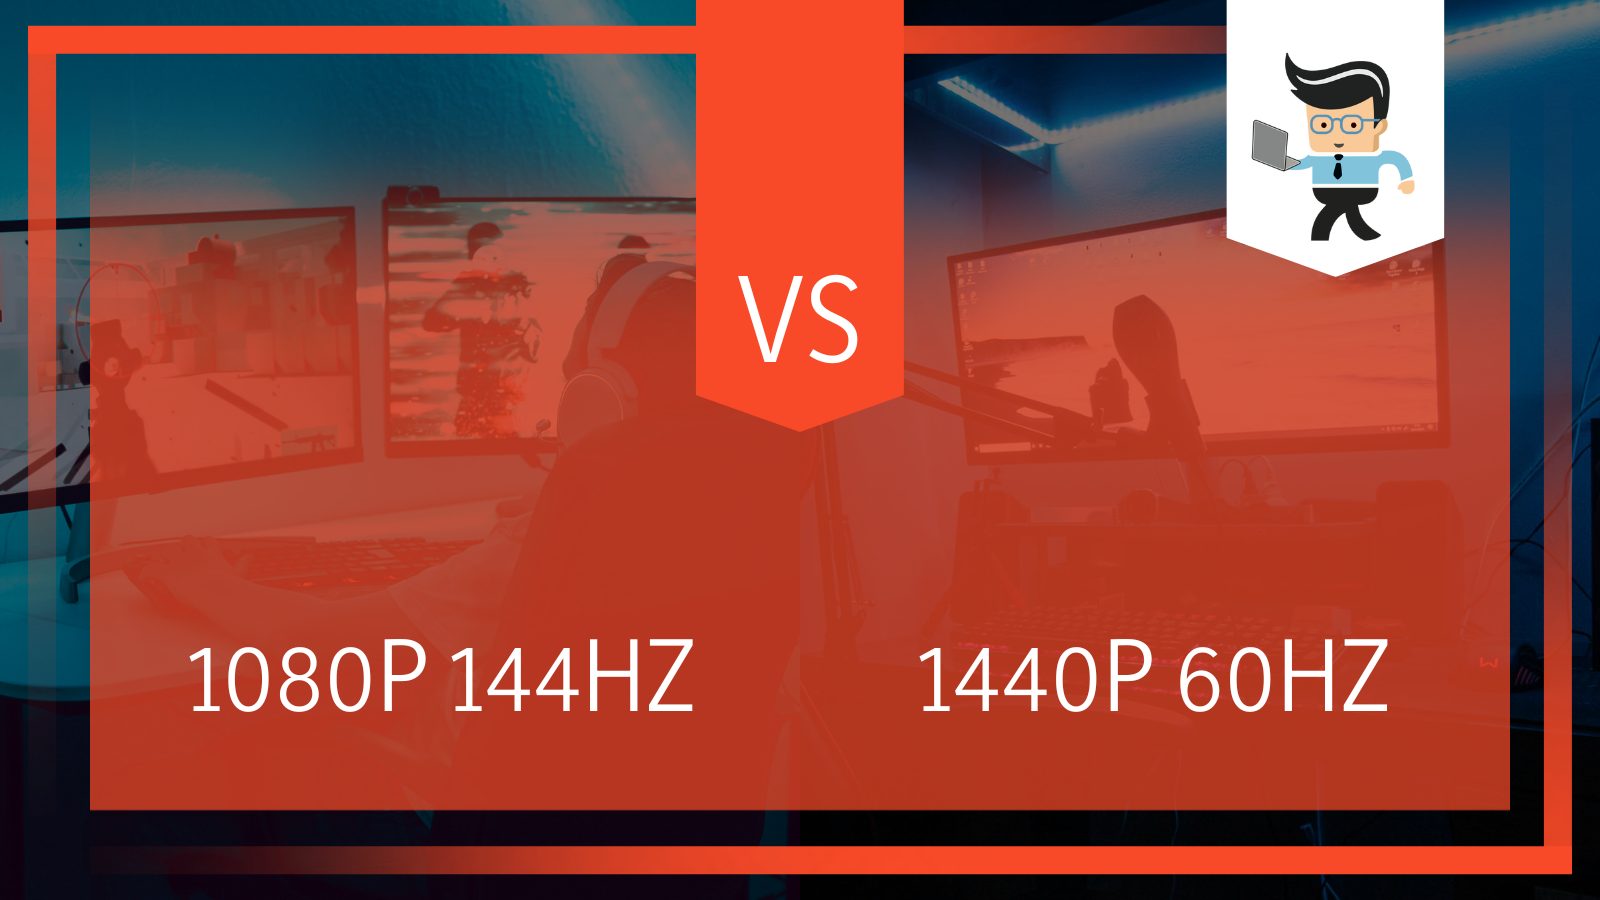 1080p 144hz vs 1440p 60hz Differences